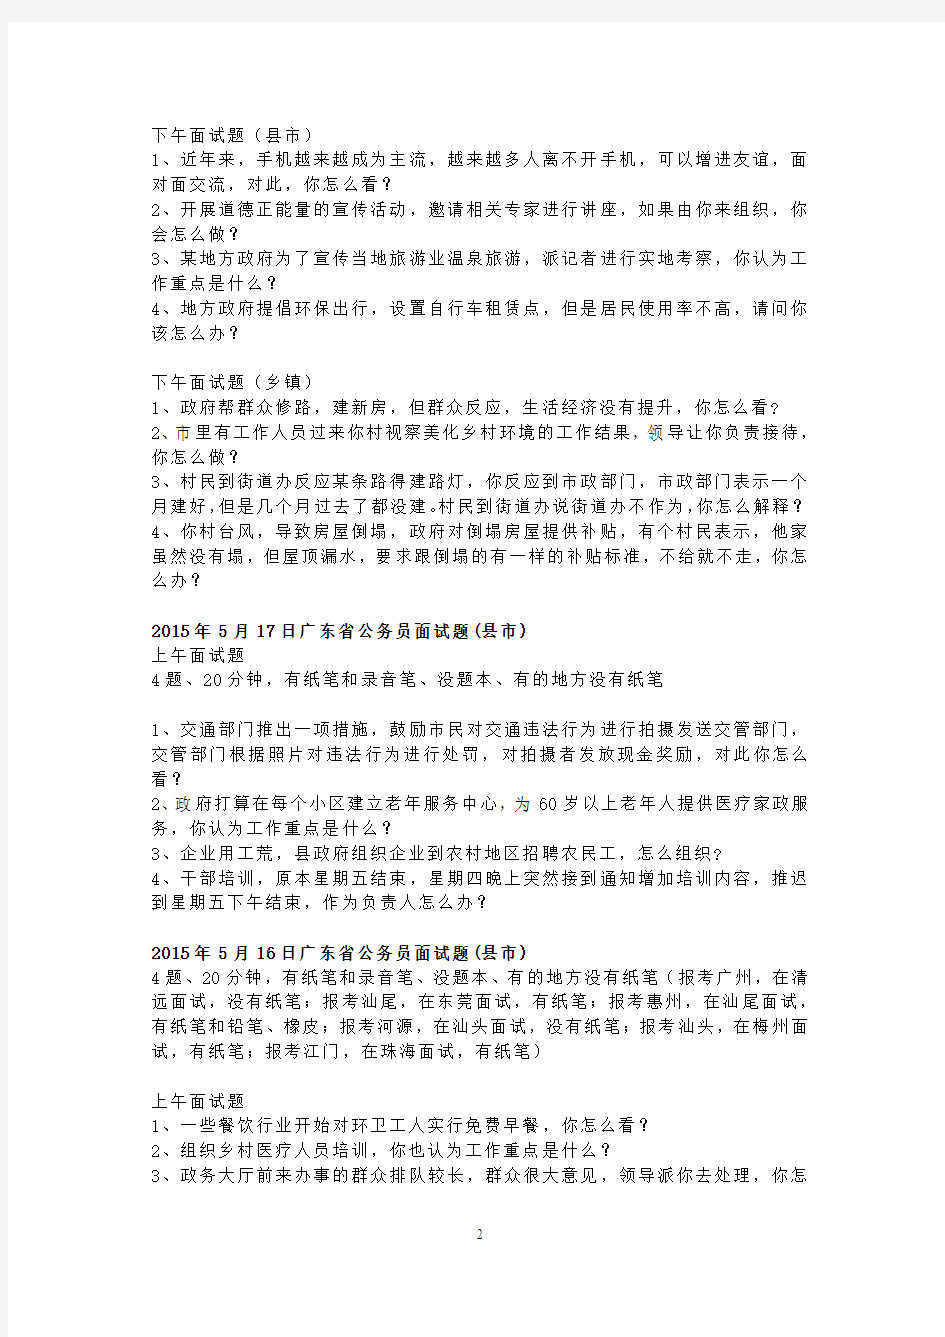 2015年广东省公务员考试面试真题